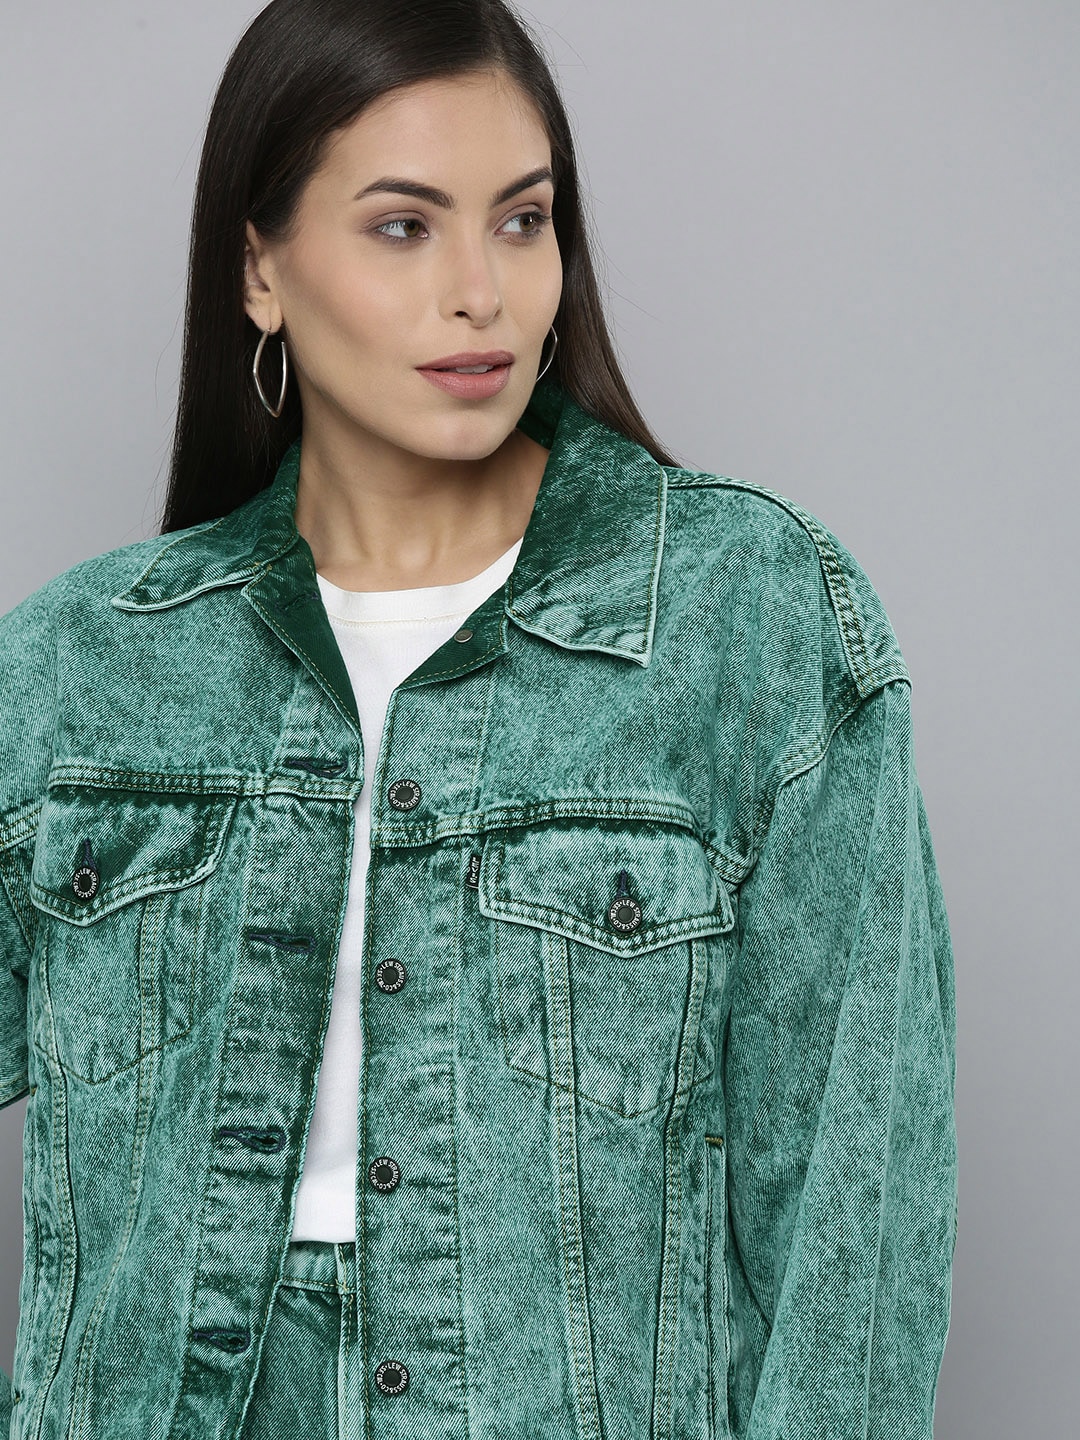 Levis X Deepika Padukone Women Green Washed Denim Jacket Price in India